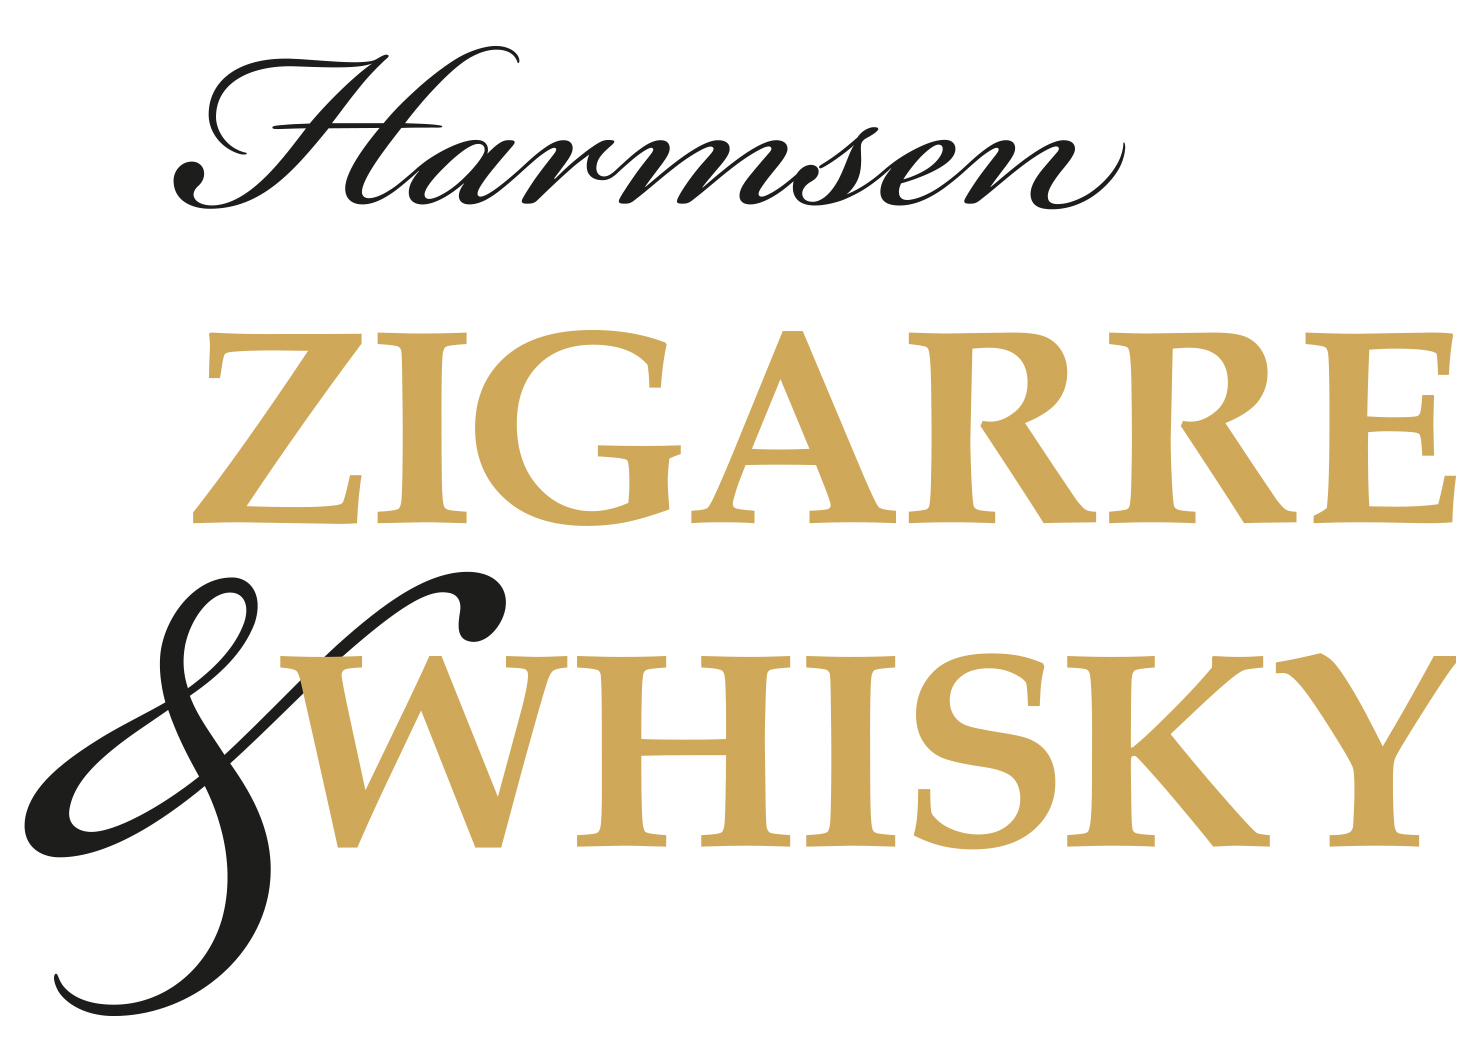 Harmsen Zigarre & Whisky